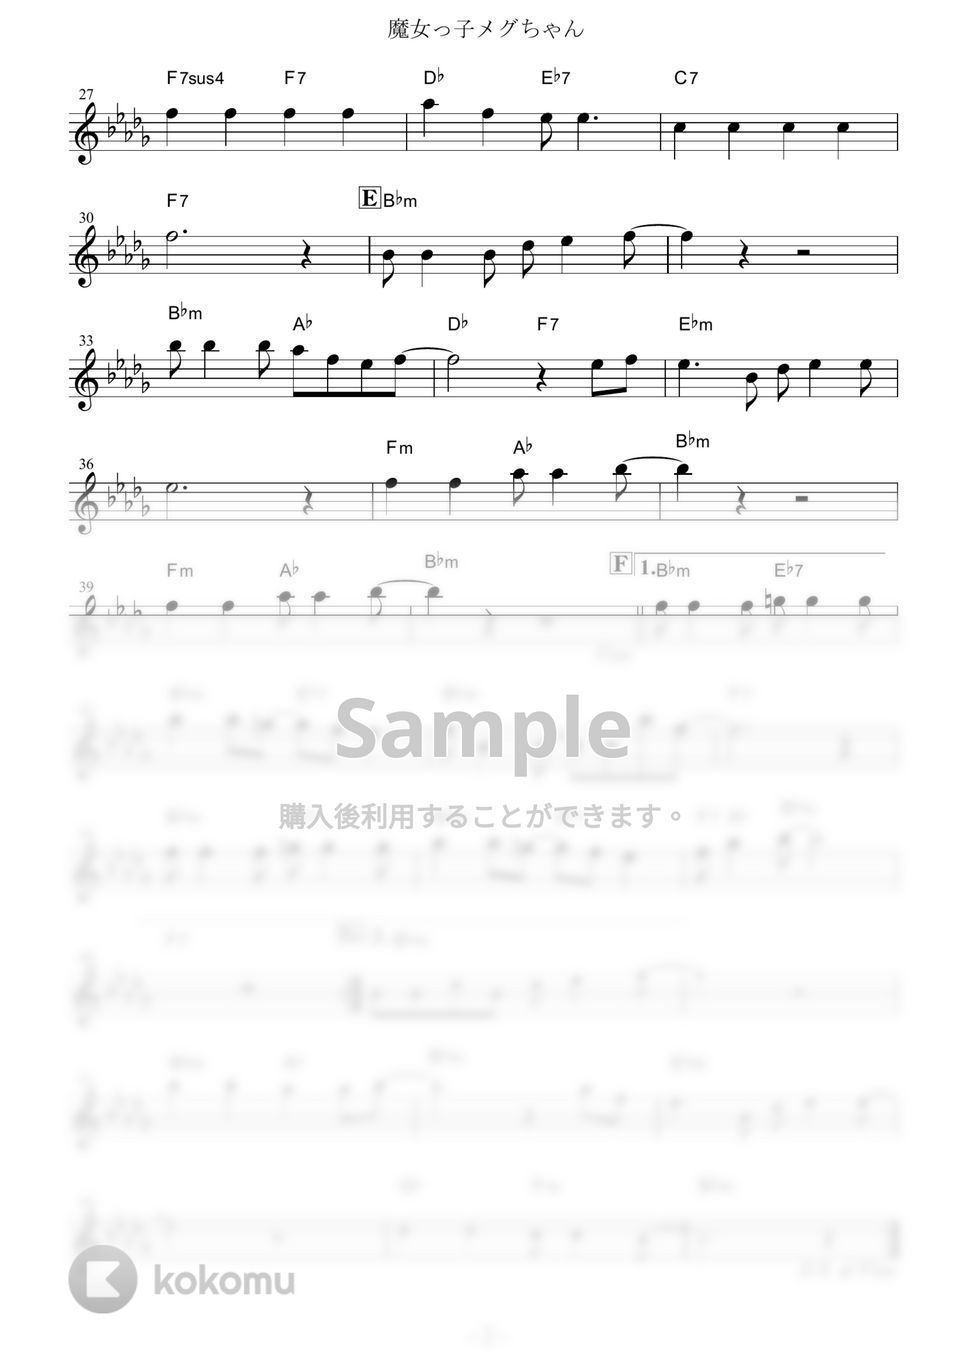 前川陽子 - 魔女っ子メグちゃん (『魔女っ子メグちゃん』 / in C) by muta-sax